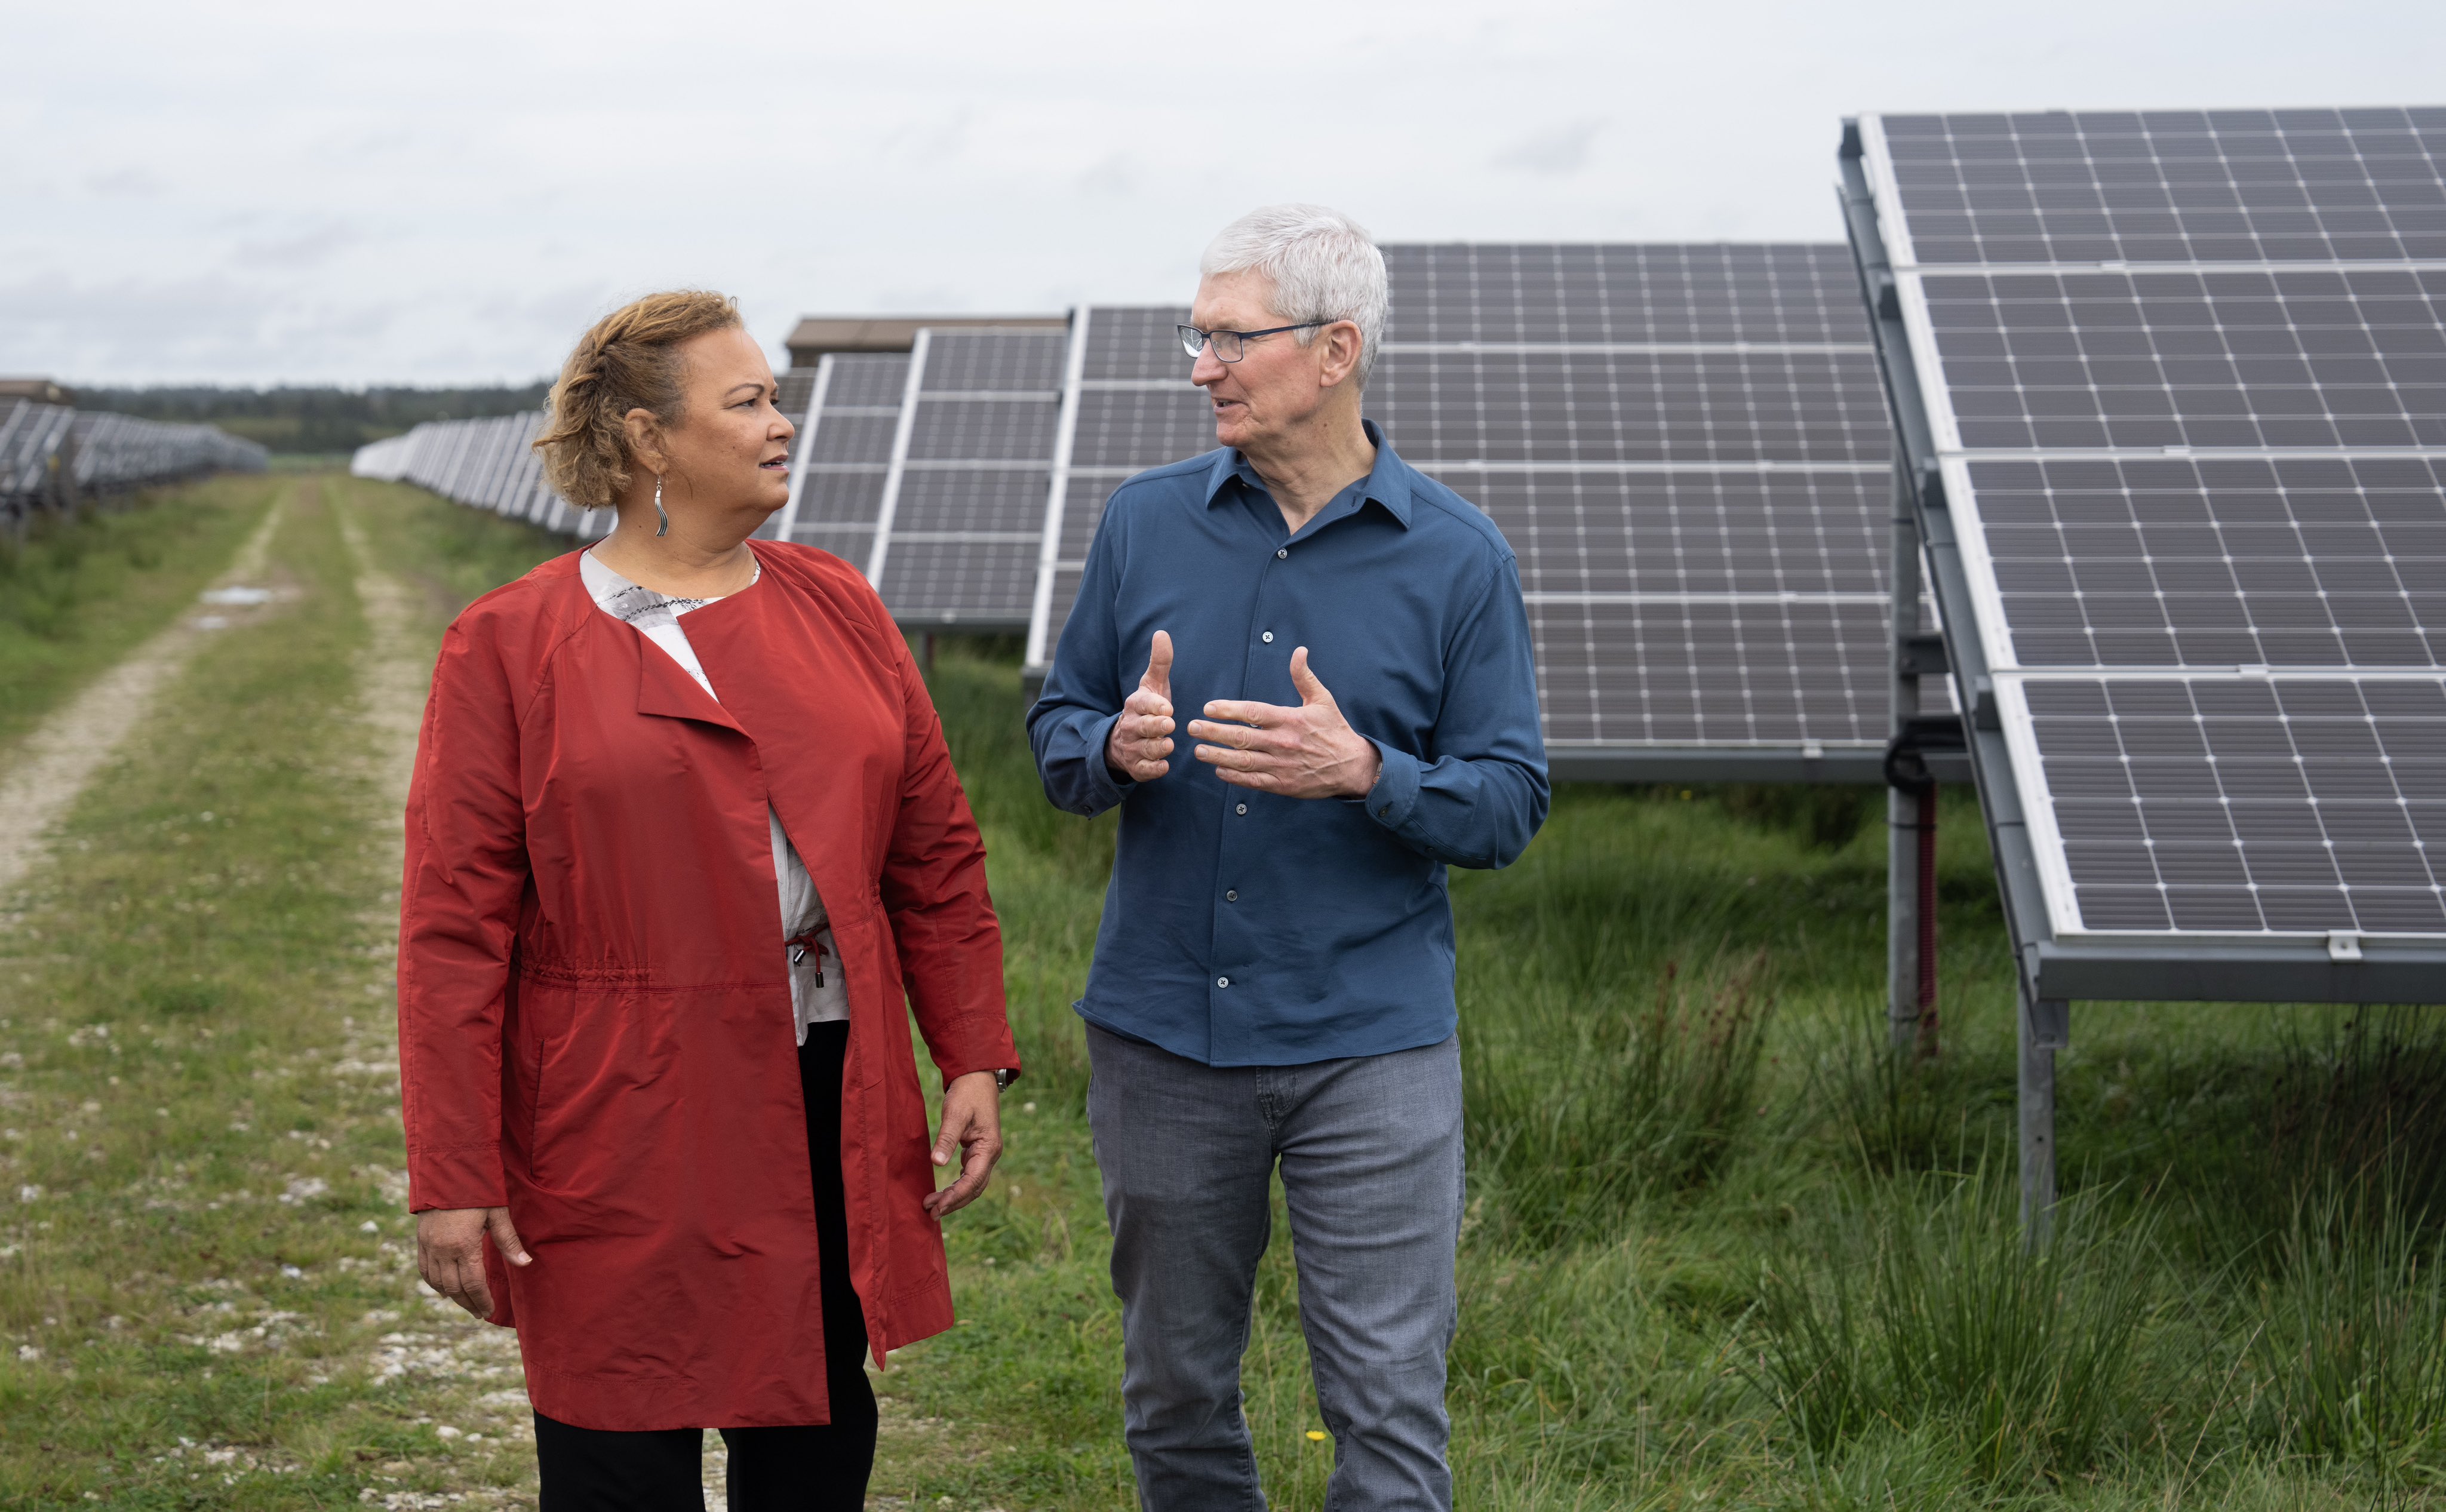 Тим Кук и Лиза Джексон: «Благодаря инвестициям в проекты по возобновляемым источникам энергии, такие как солнечная ферма в Тистеде, Дания, с 2018 года Apple полностью использует возобновляемую энергию. К 2030 году мы планируем сделать все наши продукты углеродно-нейтральными.»